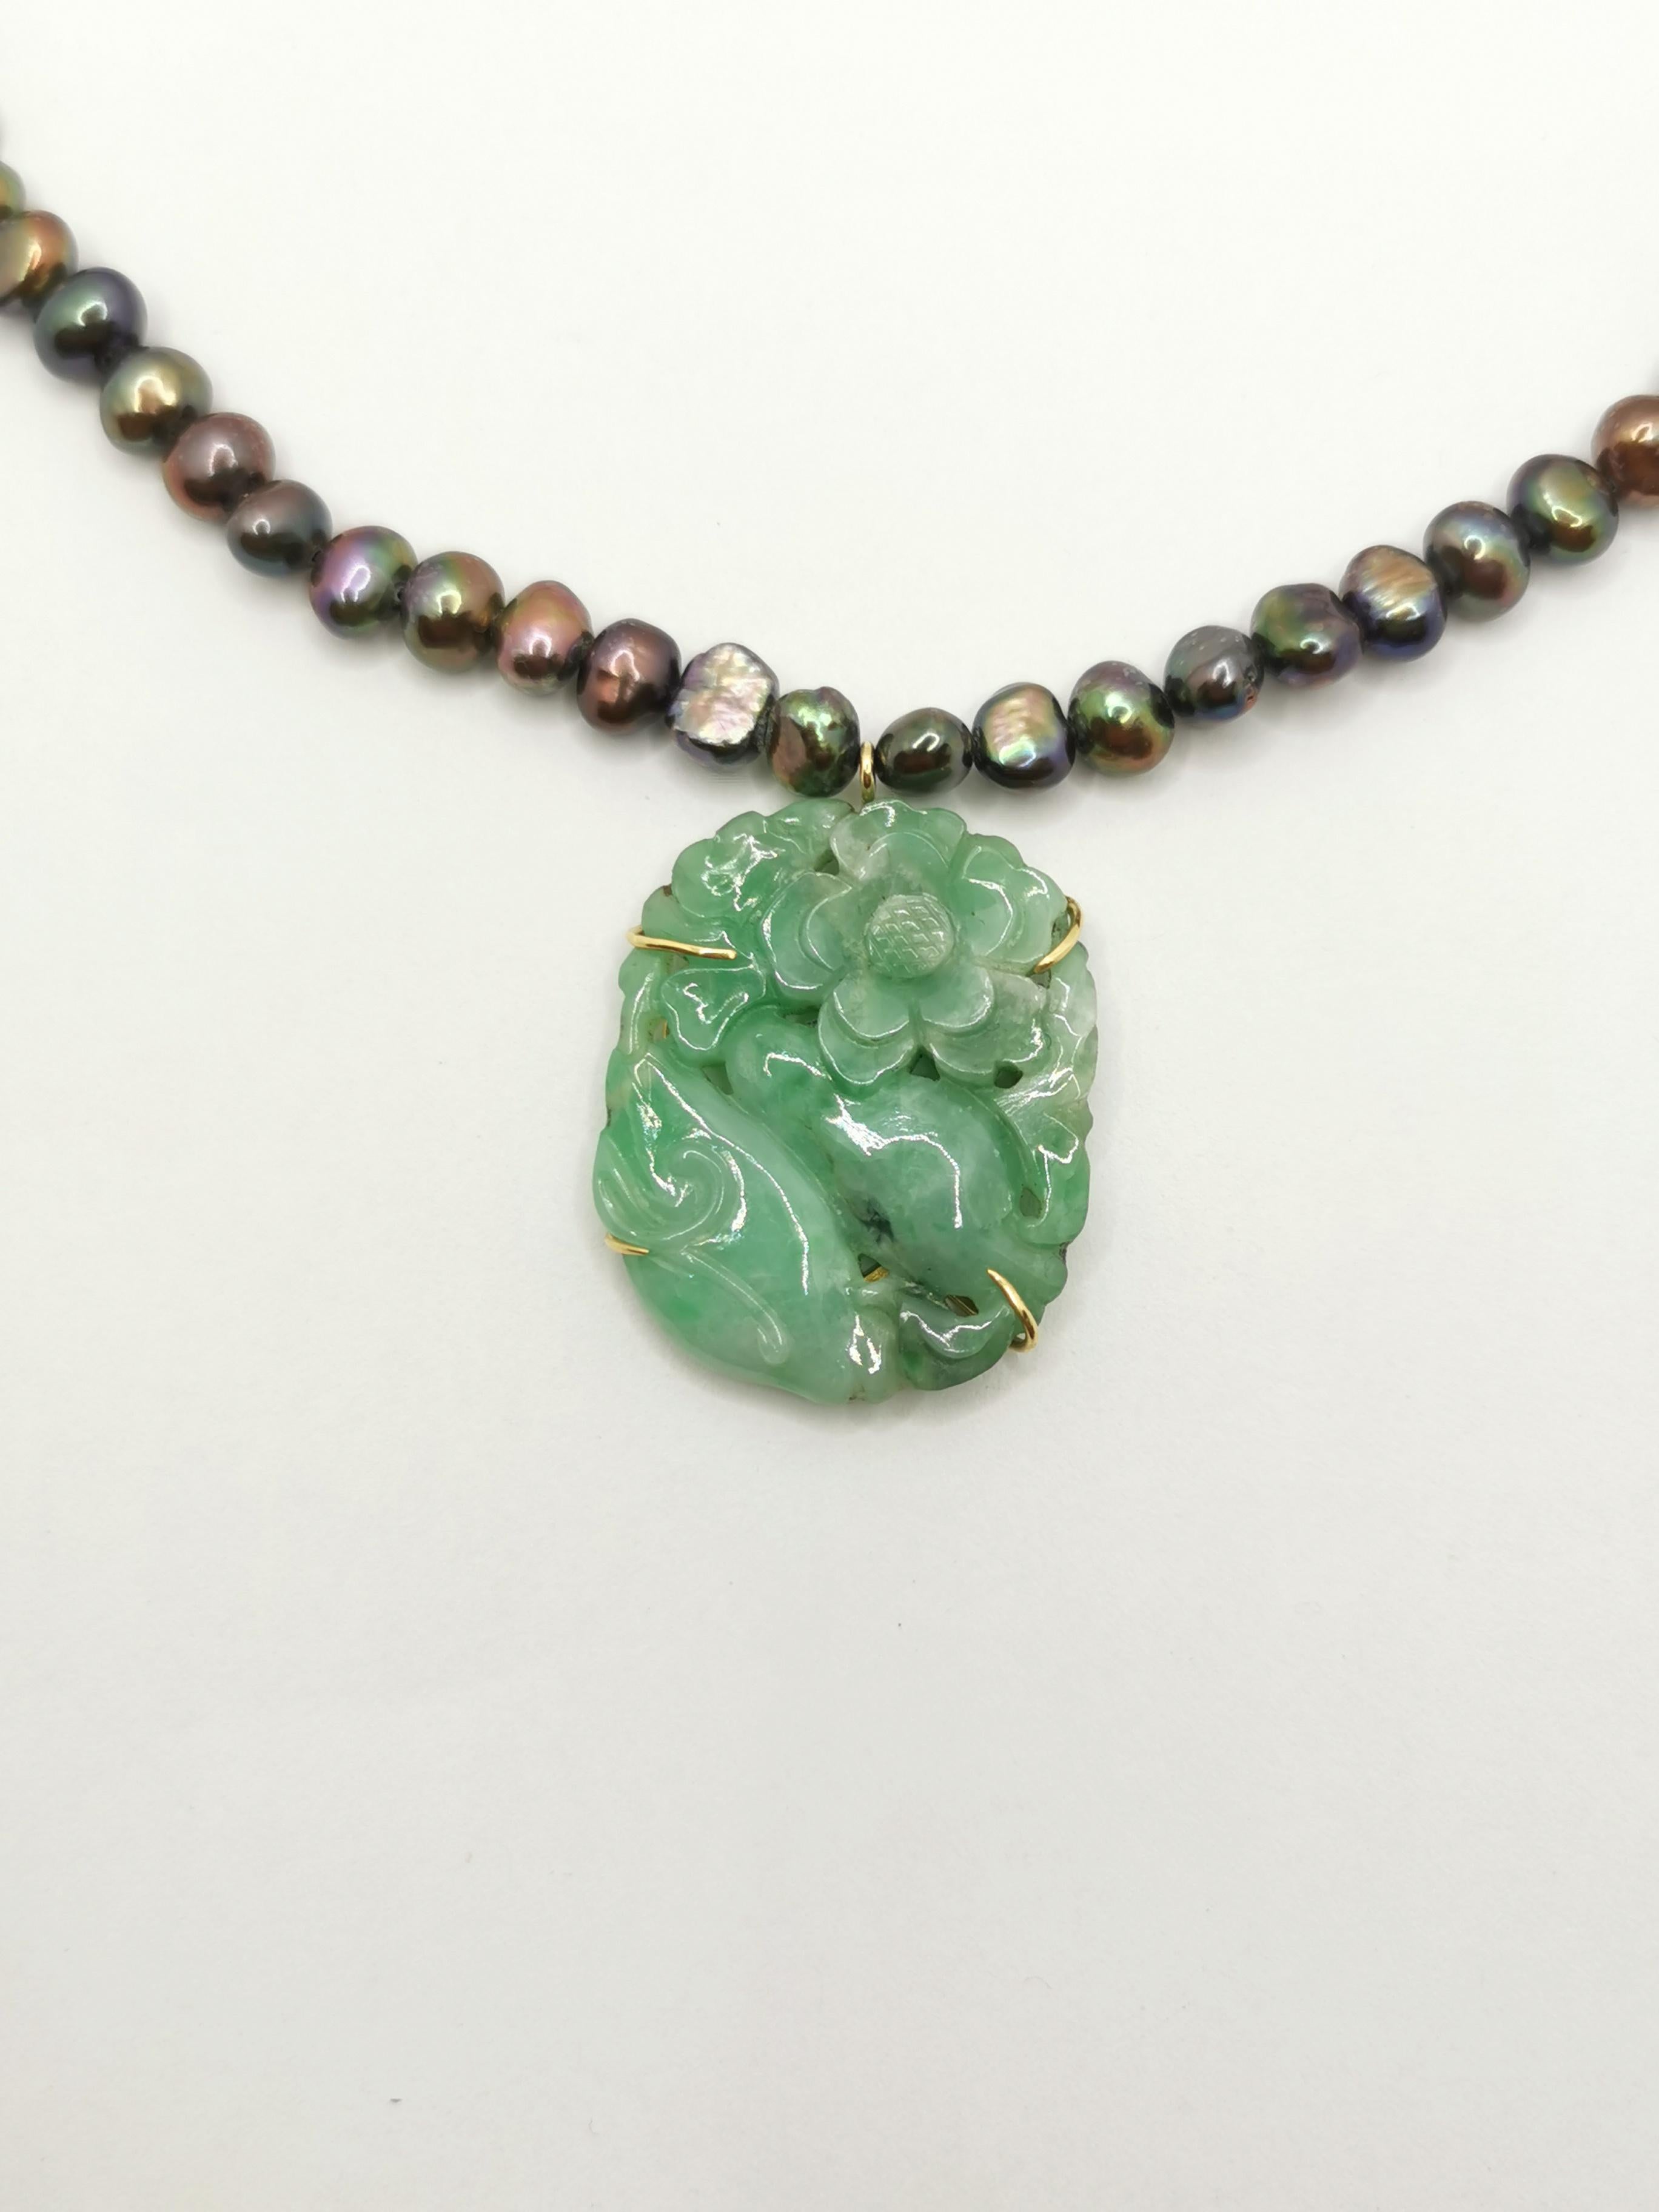 Voici un magnifique collier de perles de Tahiti d'eau douce.

Les perles sont des perles d'eau douce de Tahiti de grande qualité.
Ils changent de couleur, passant du vert et du gris au violet.
Leur forme irrégulière est leur principale